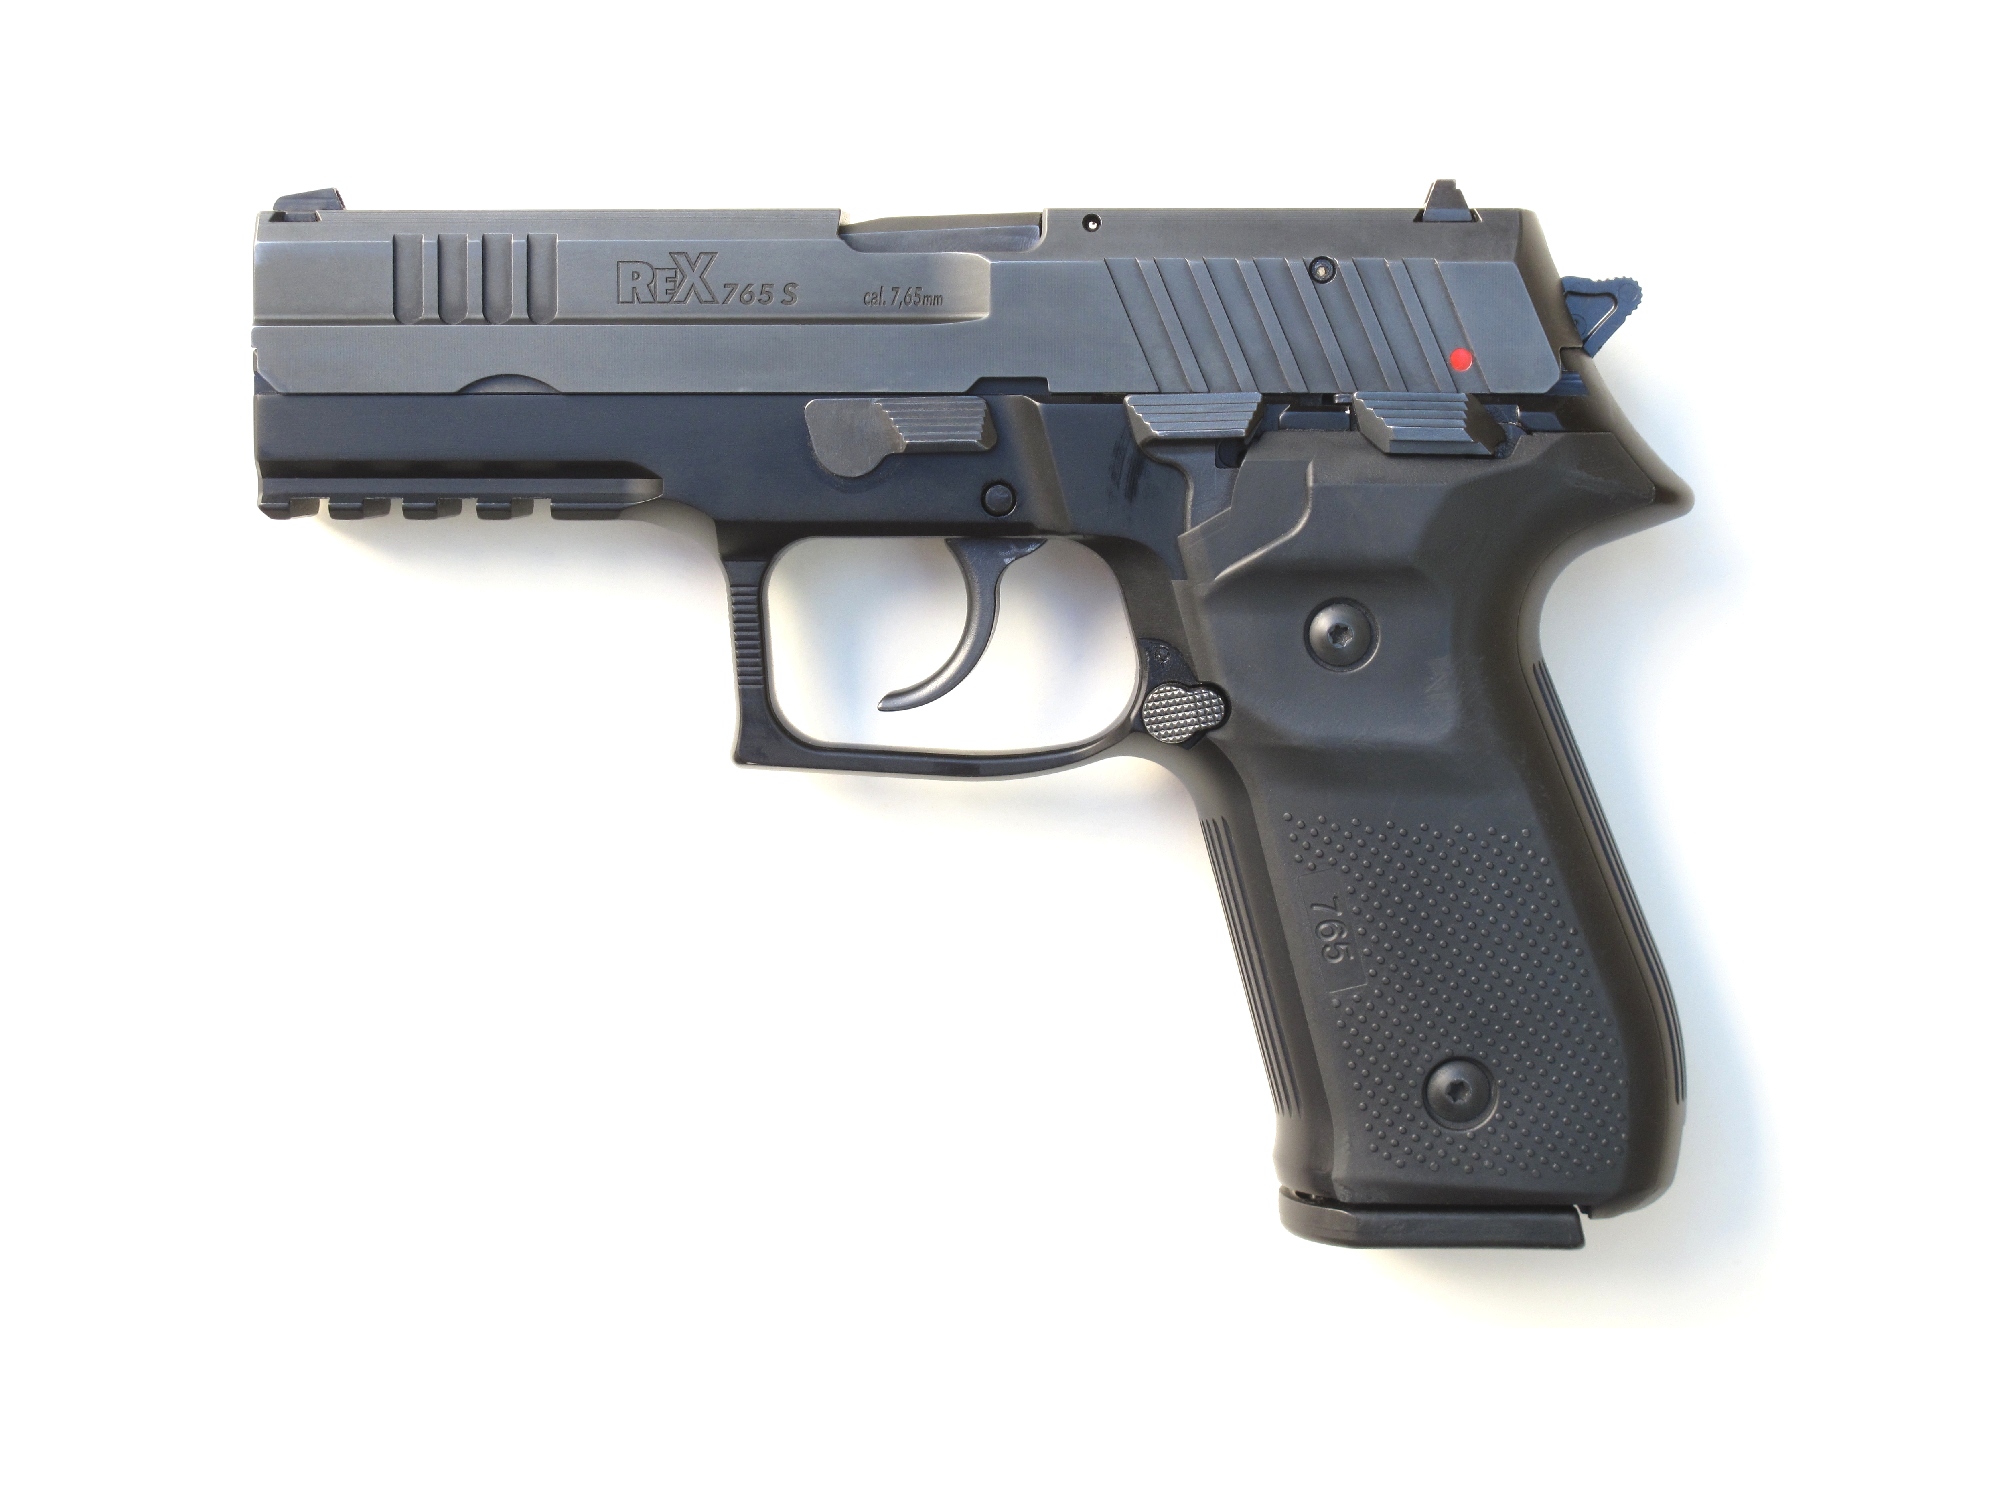 Pistolet arex modèle REX 765 S en calibre 7,65 mm Browning.